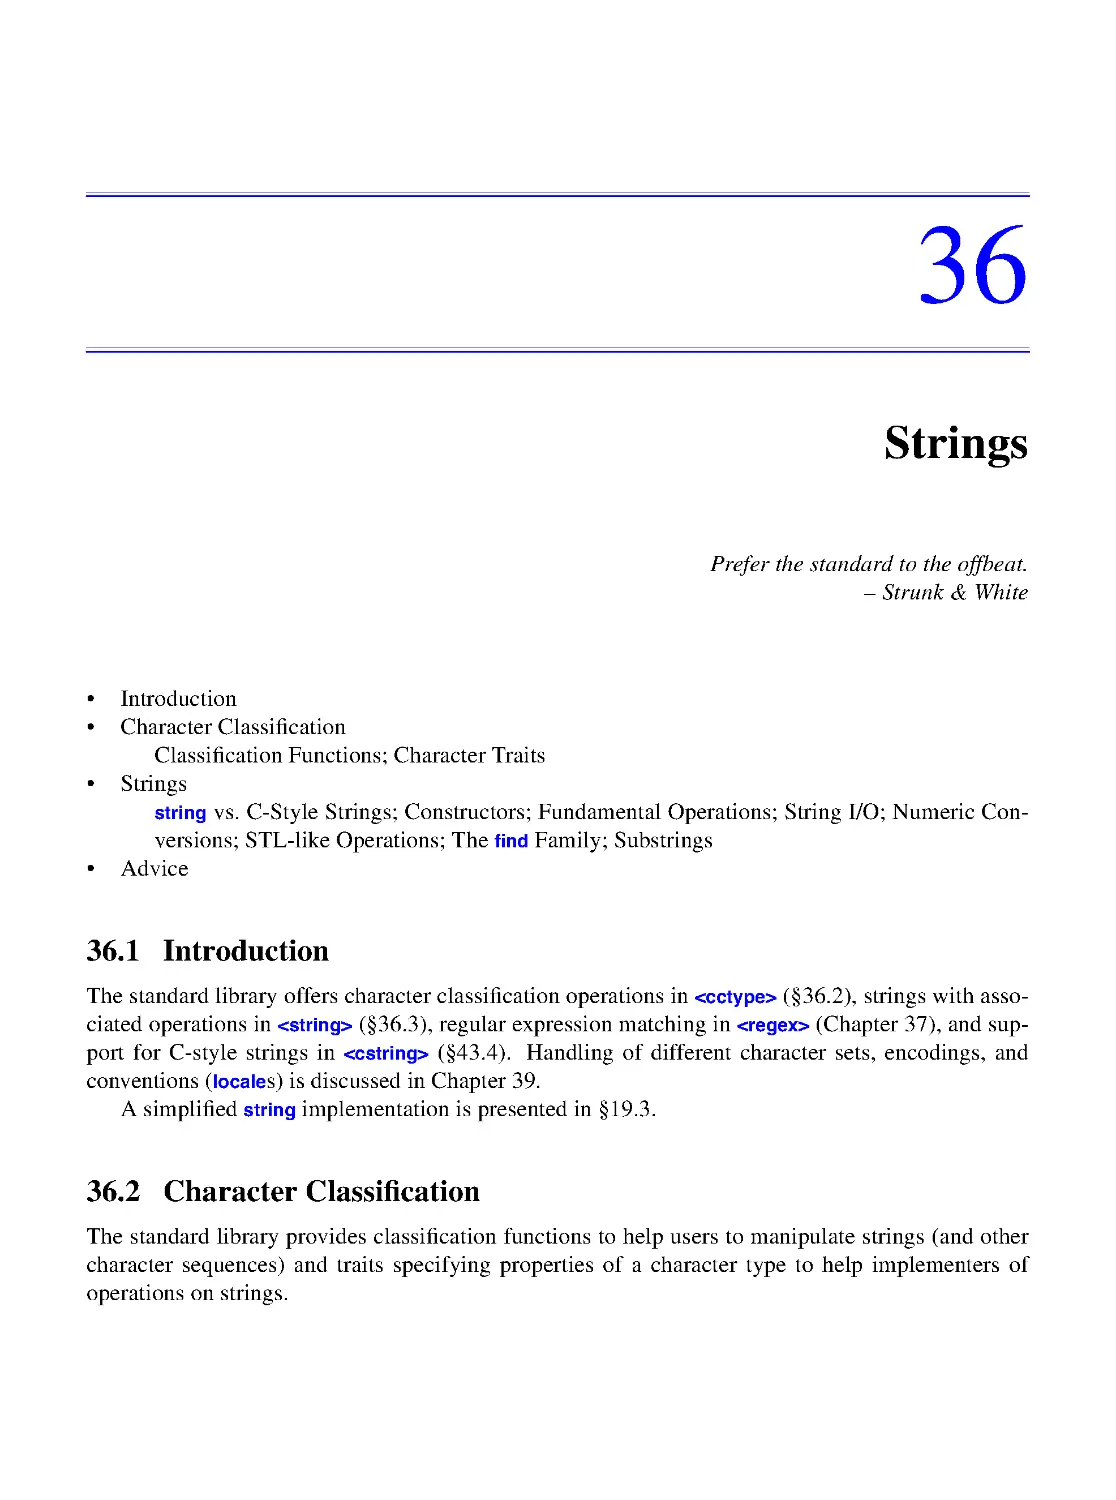 36. Strings